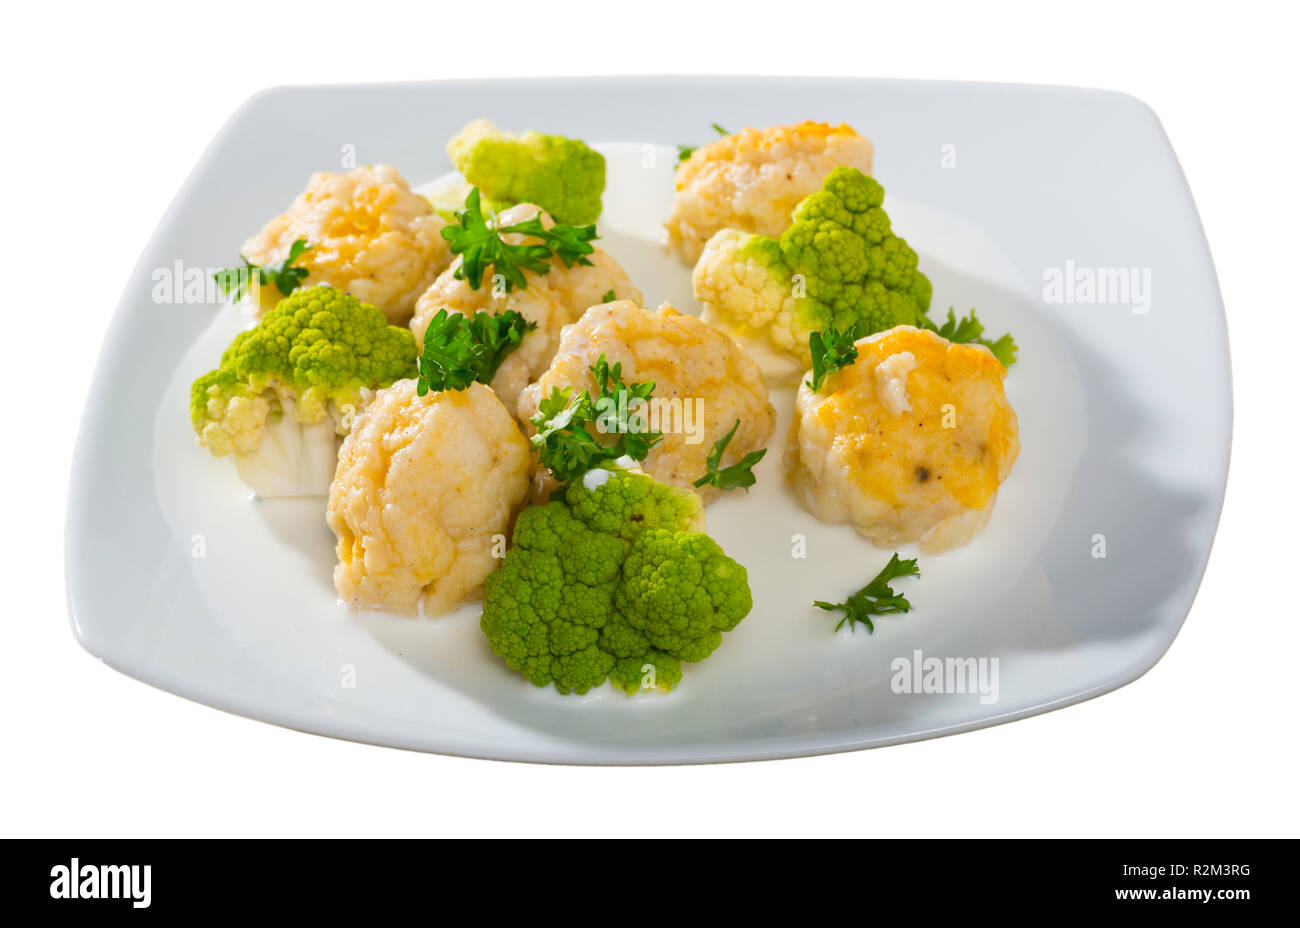 Immagine di polpette di pesce di bianco gustoso pesce servite con brokkoli in corrispondenza della piastra, cucina norvegese. Isolato su sfondo bianco Foto Stock